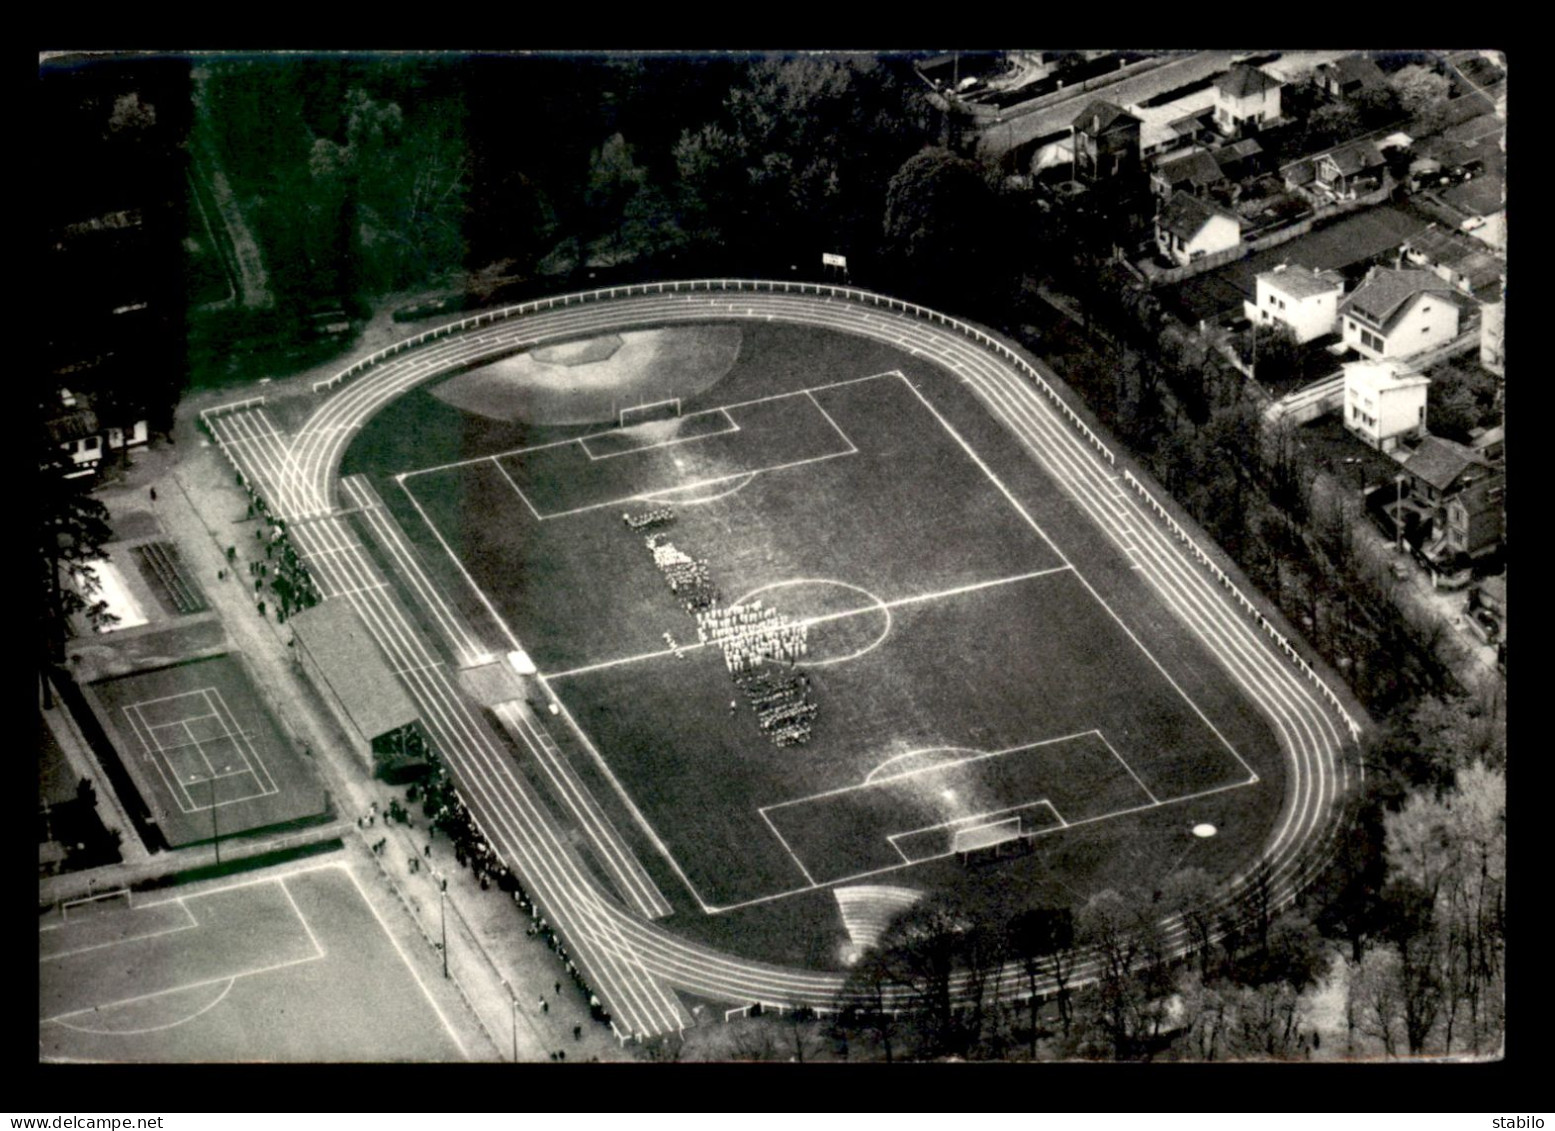 STADES - FOOTBALL - EPINAY-SUR-SEINE (SEINE ST-DENIS) - FETE DE L'ECOLE MUNICIPALE DU SPORT 20 AVRIL 1969 - Stades